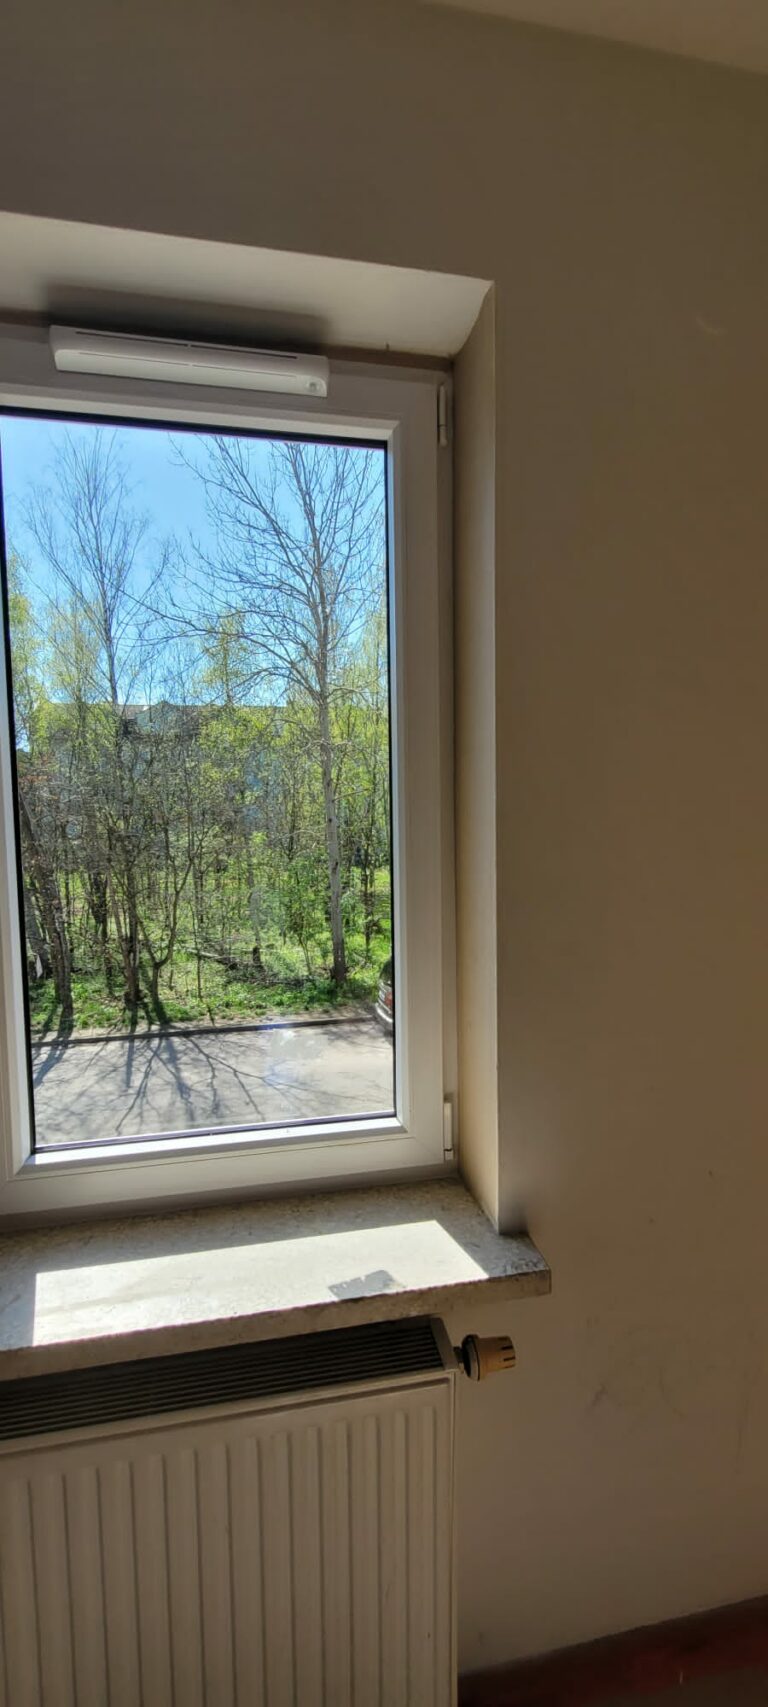 okno antywłamaniowe z widokiem na ogród